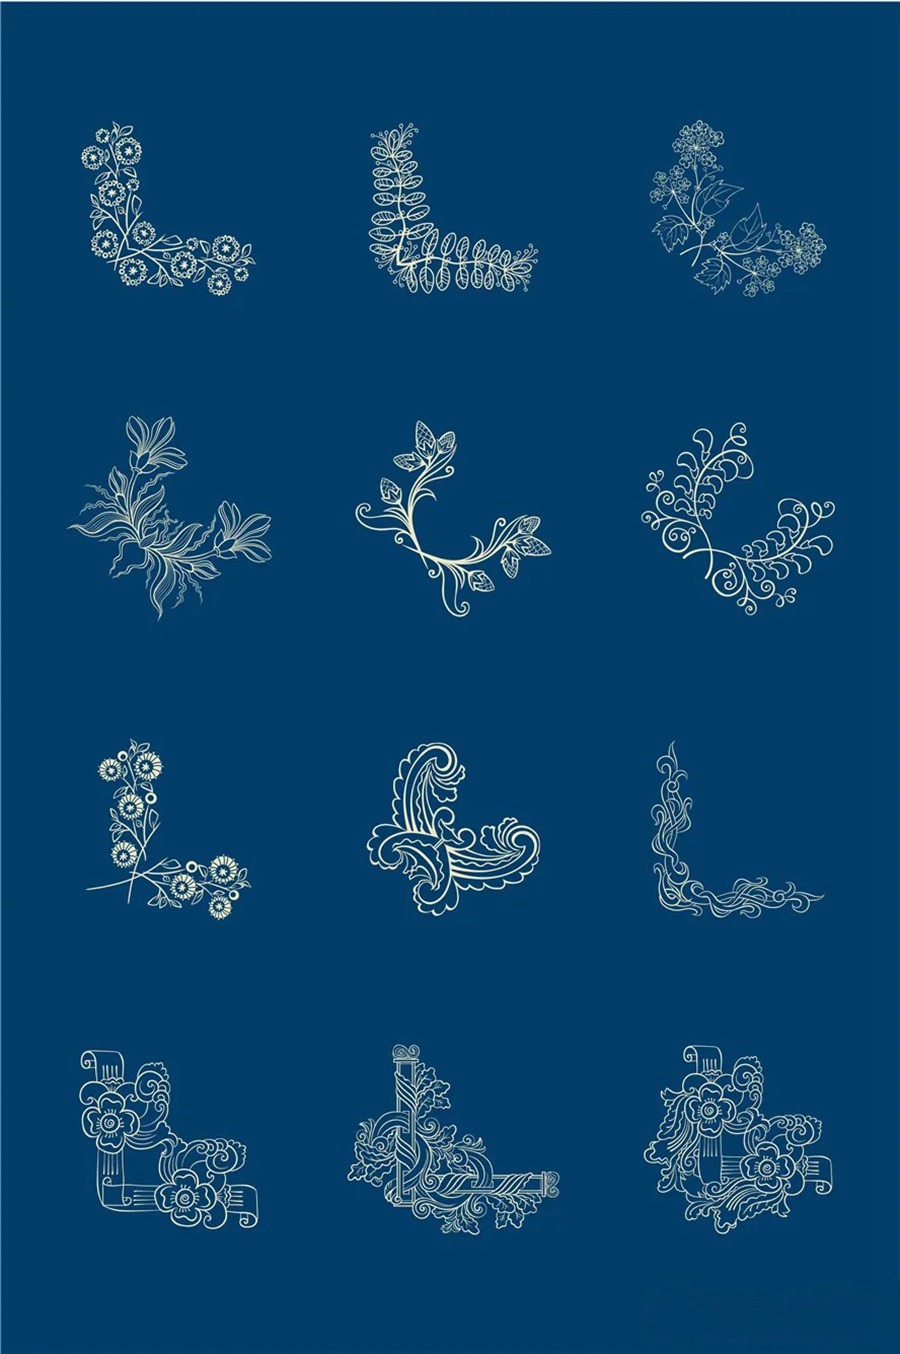 中国风传统古典青花瓷图案花纹图形纹样AI矢量模板花纹设计素材 图片素材 第14张